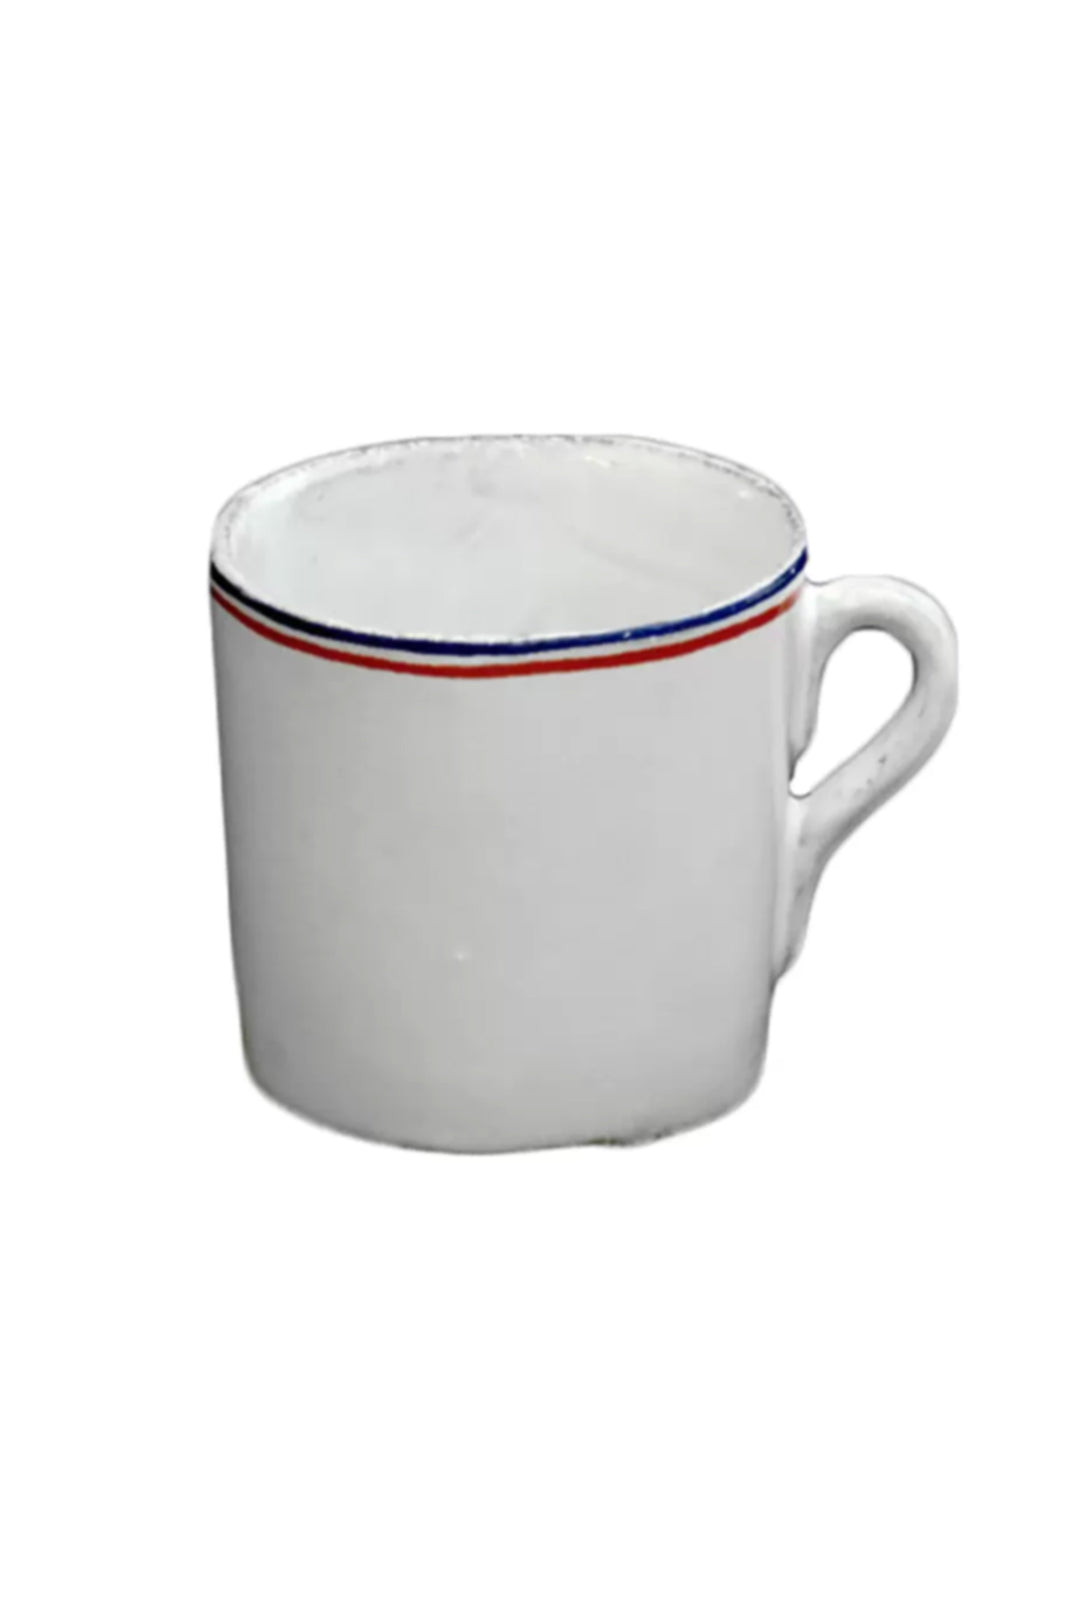 Tricolore Small Cup